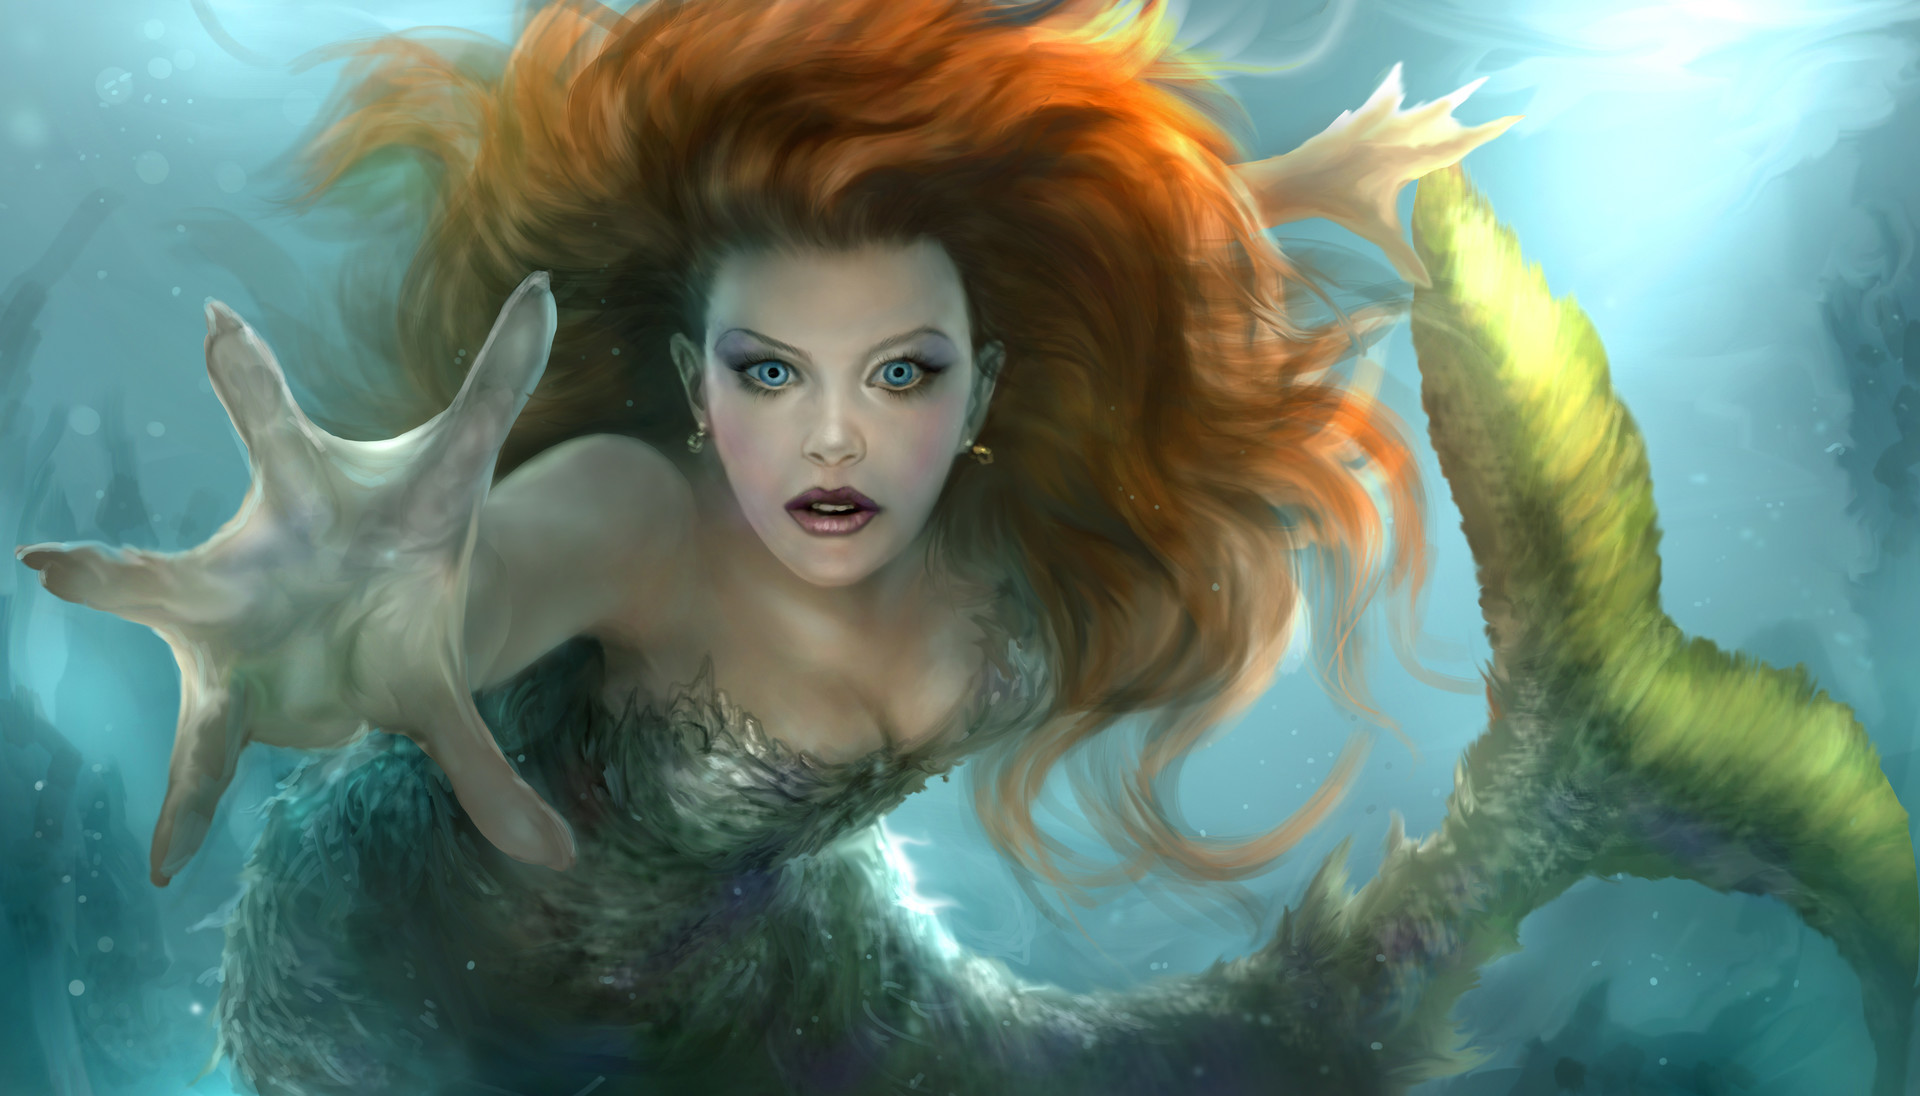 Descarga gratuita de fondo de pantalla para móvil de Fantasía, Ojos Azules, Sirena, Cabello Rojo, Submarina.